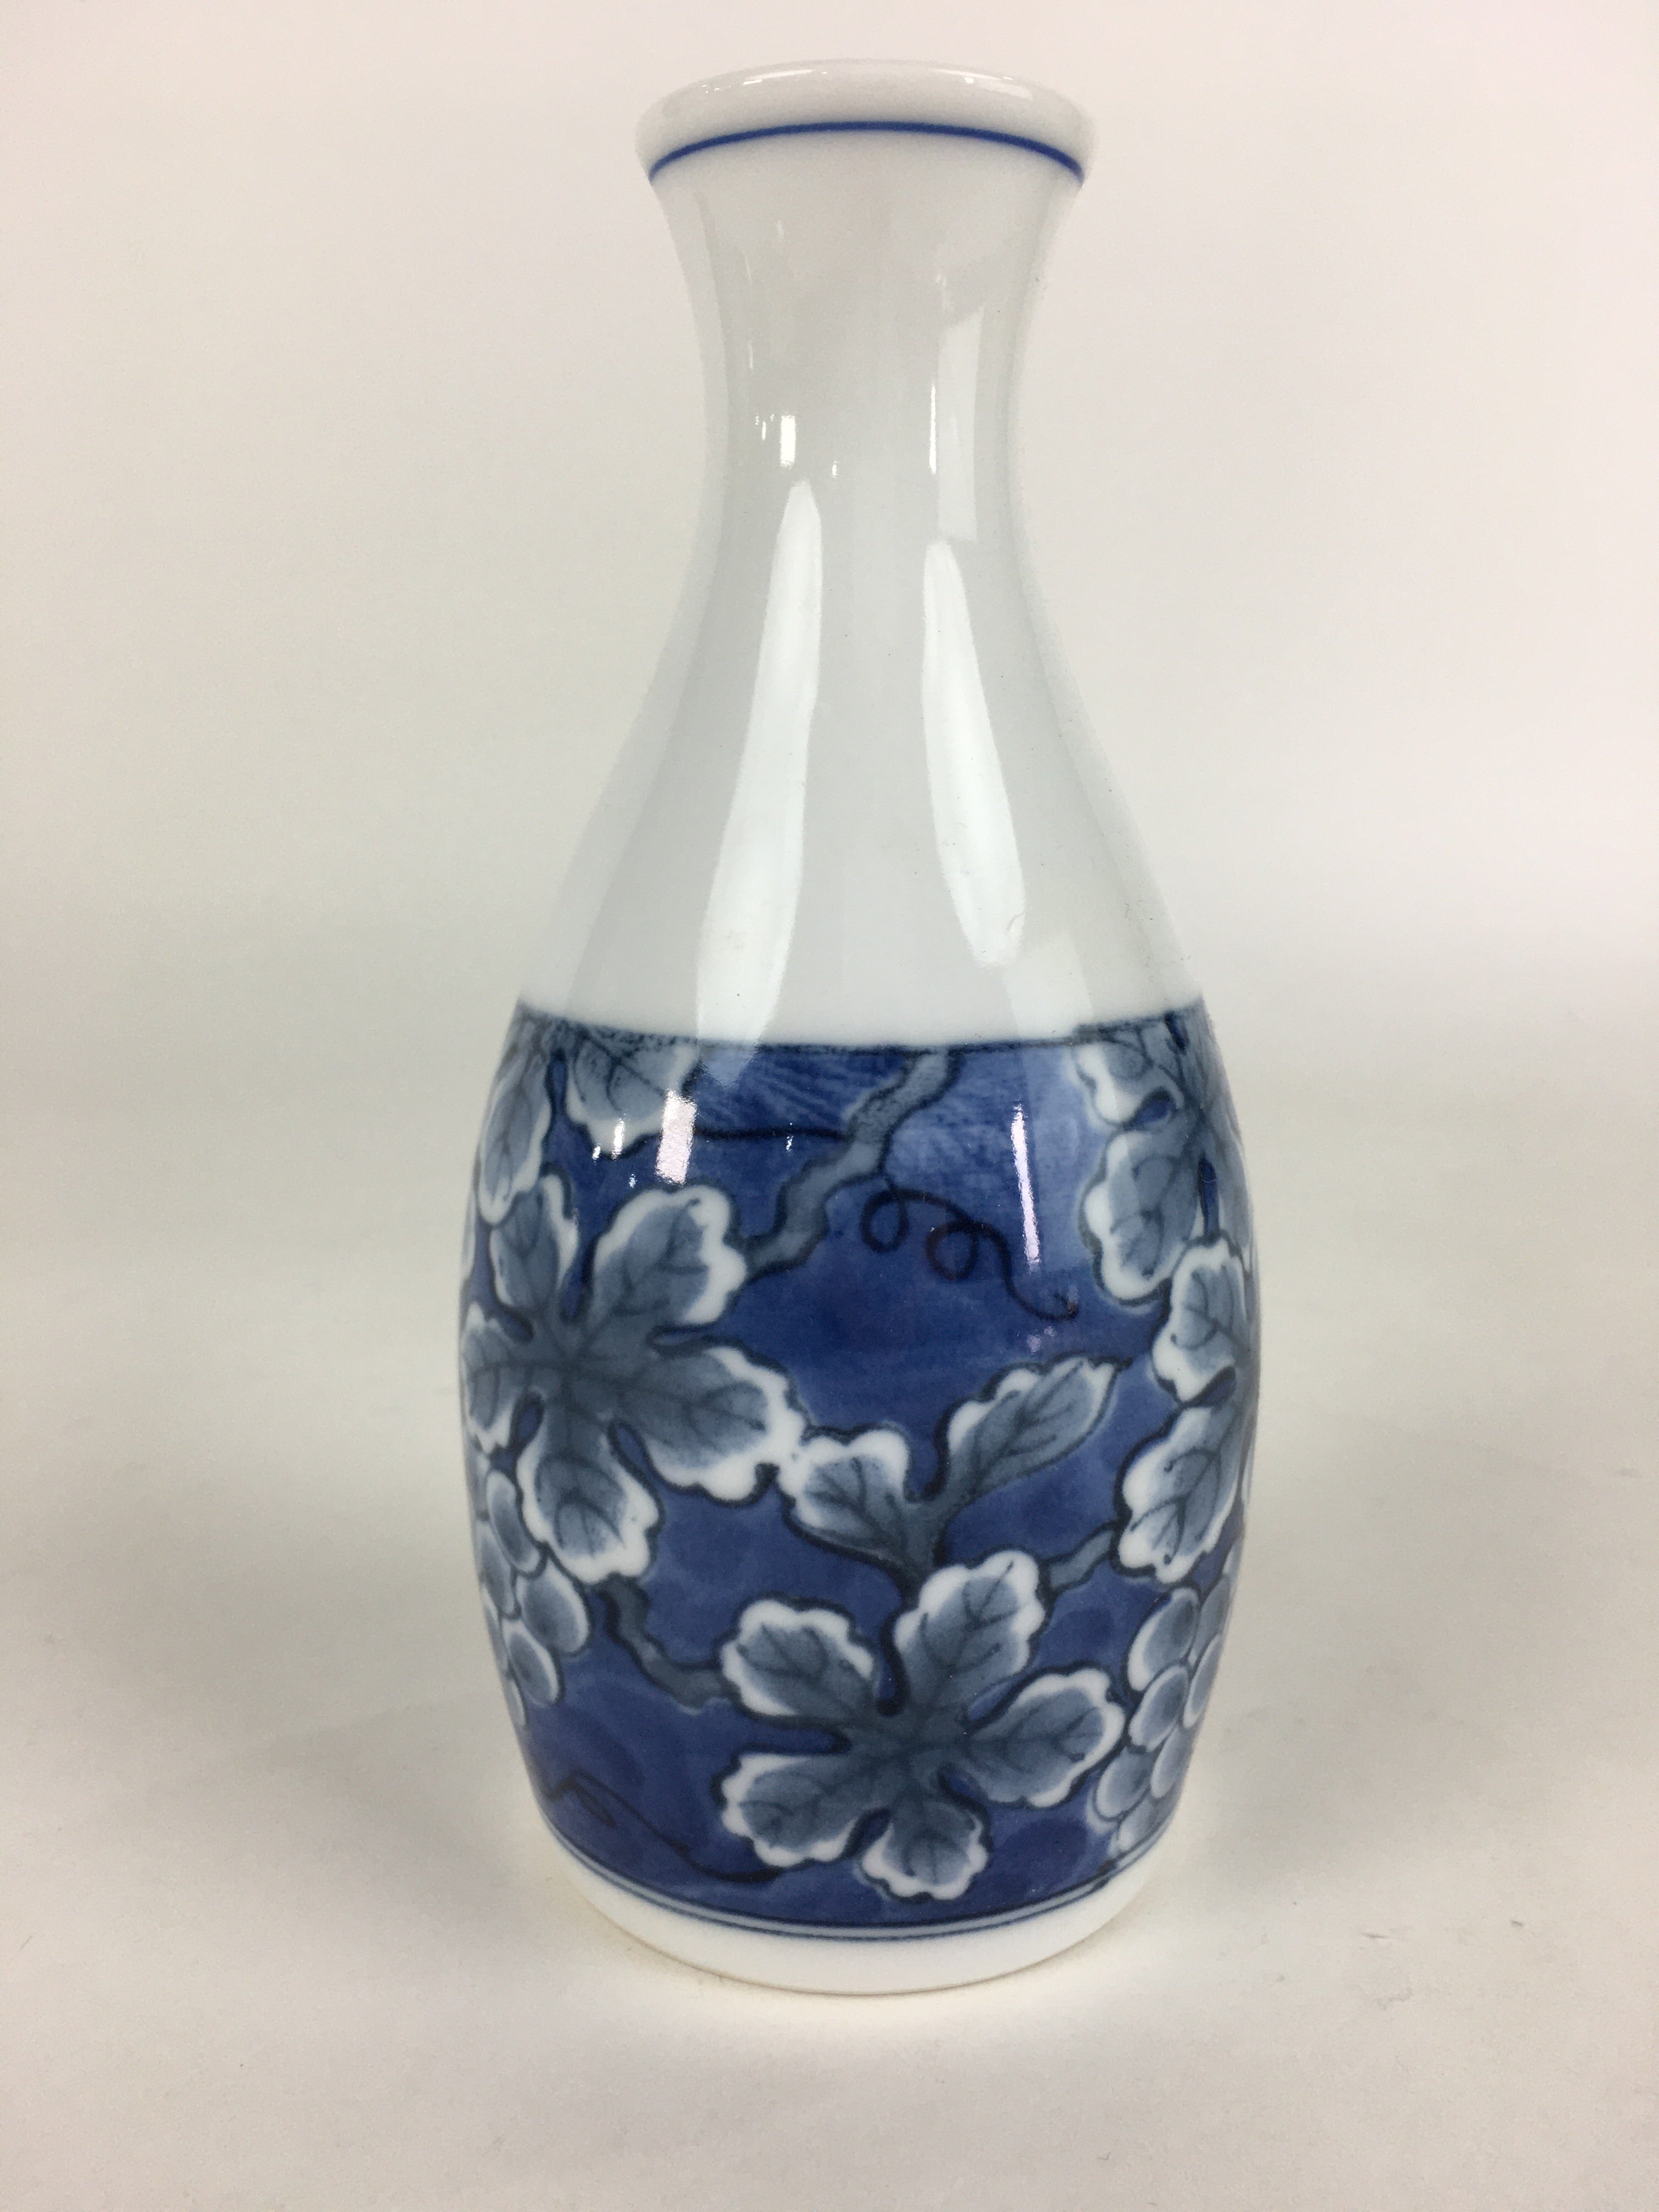 Japanese Porcelain Sake Bottle Vtg Mino Ware Tokkuri Blue White TS397